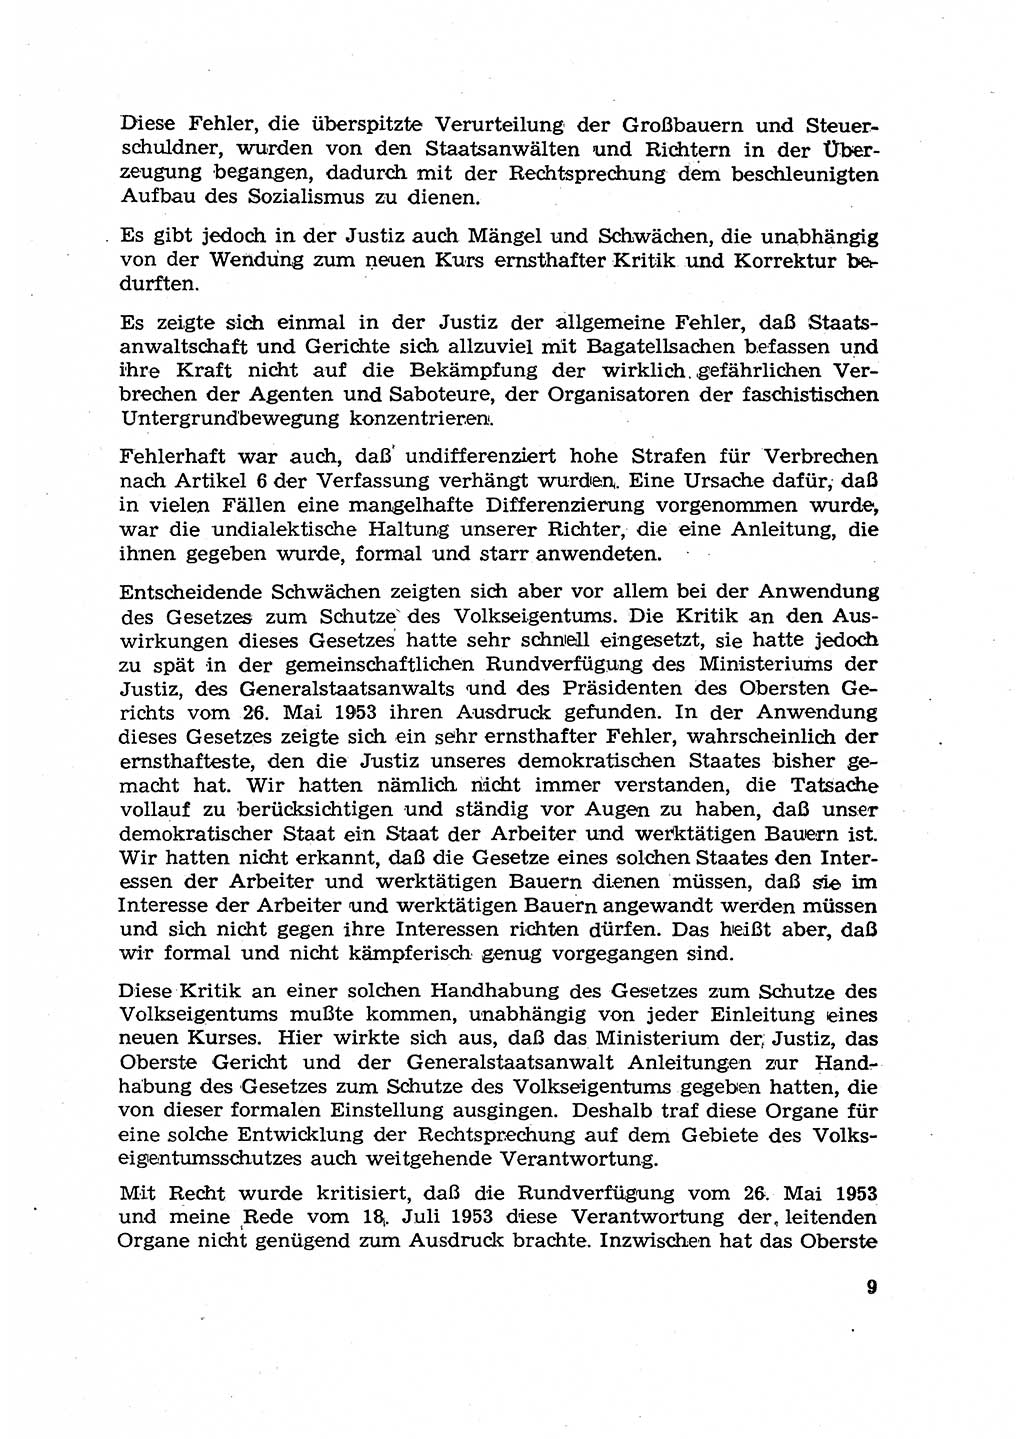 Hauptaufgaben der Justiz [Deutsche Demokratische Republik (DDR)] bei der Durchführung des neuen Kurses 1953, Seite 9 (Hpt.-Aufg. J. DDR 1953, S. 9)